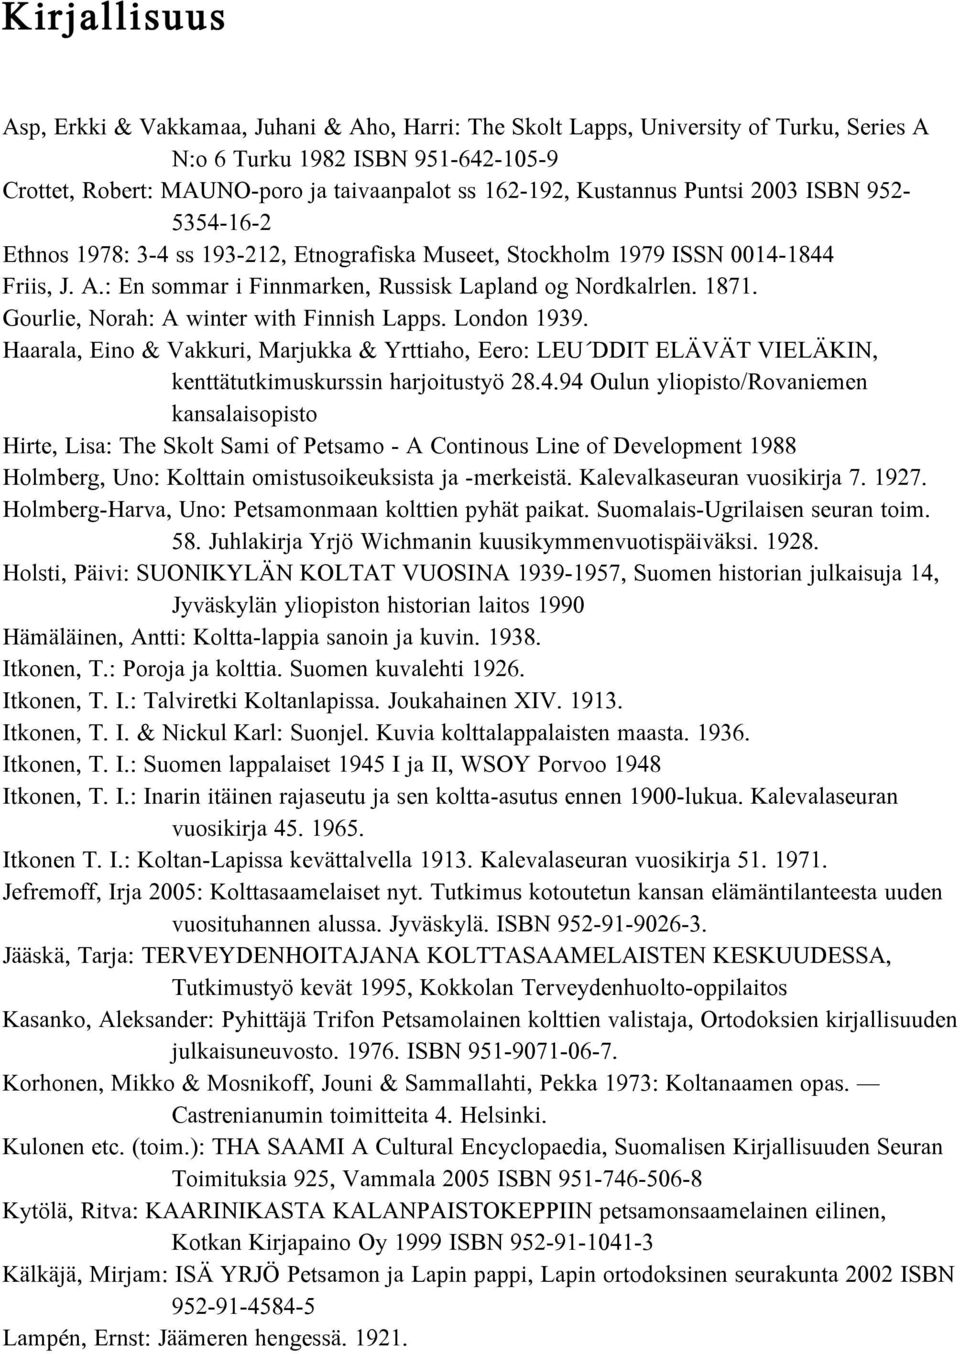 Gourlie, Norah: A winter with Finnish Lapps. London 1939. Haarala, Eino & Vakkuri, Marjukka & Yrttiaho, Eero: LEU DDIT ELÄVÄT VIELÄKIN, kenttätutkimuskurssin harjoitustyö 28.4.